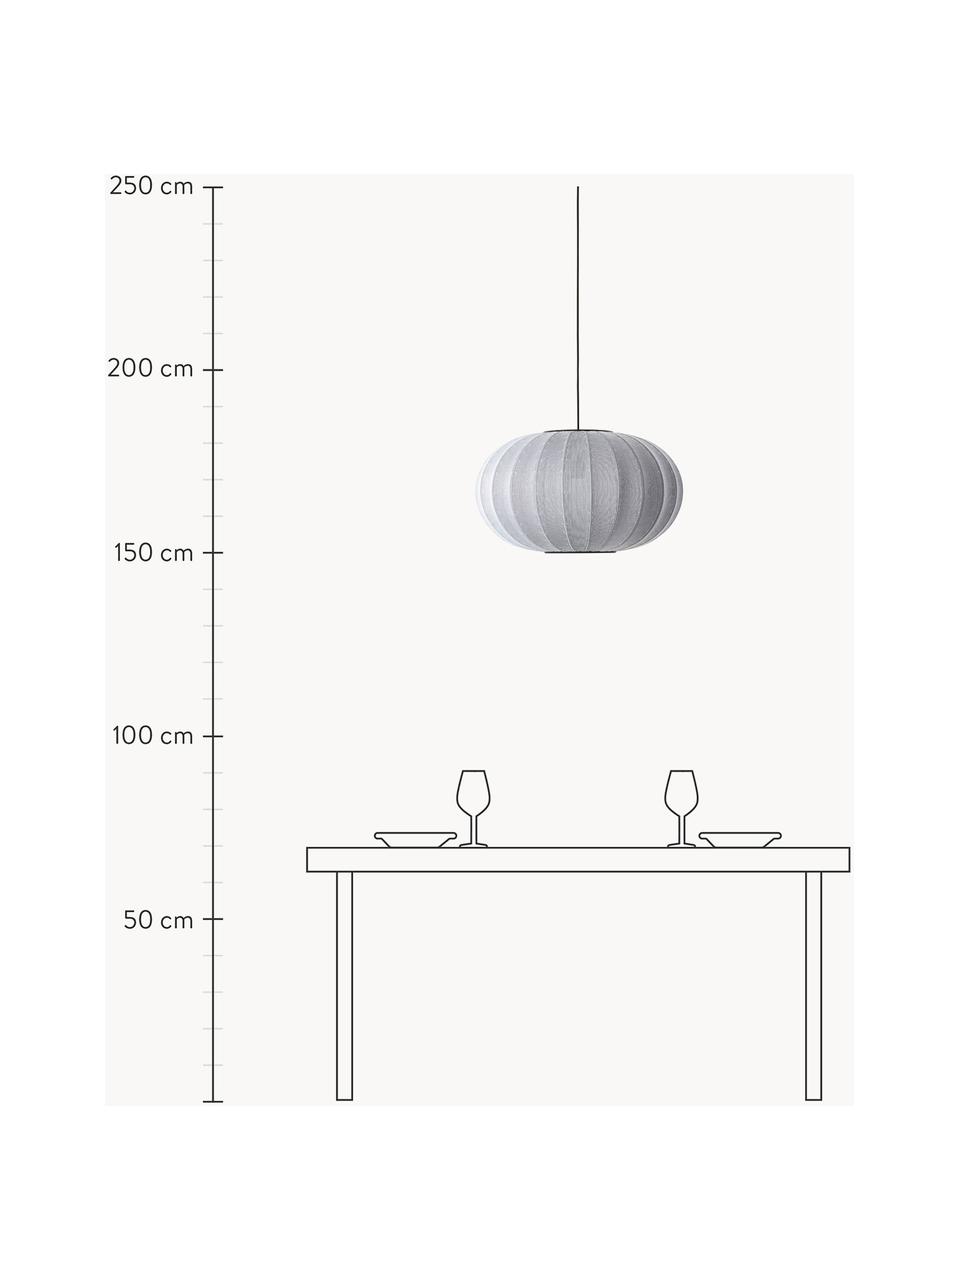 Lámpara de techo Knit-Wit, Pantalla: fibra sintética, Adornos: metal recubierto, Cable: cubierto en tela, Gris claro, Ø 45 x Al 26 cm